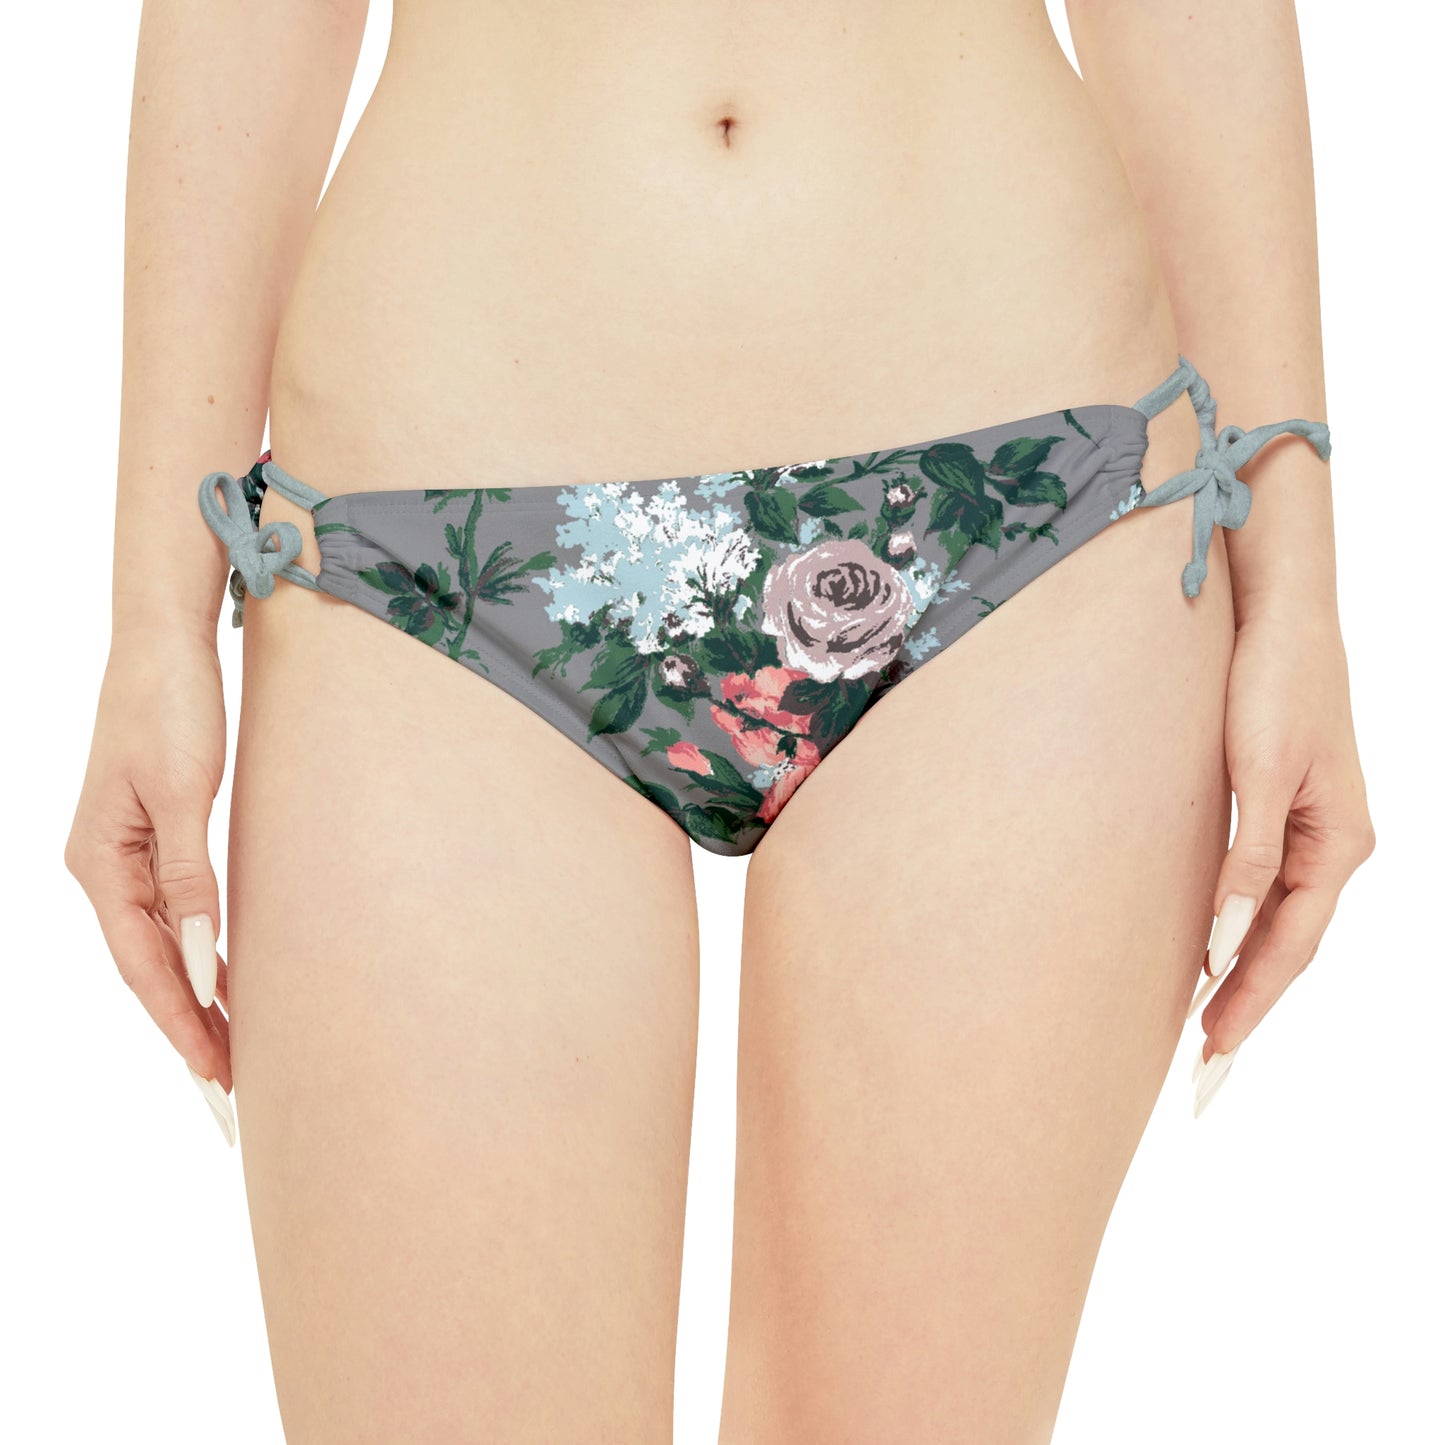 Antoinette Grey Bella Roses Strappy Bikini Set  | Pinup Couture Swim